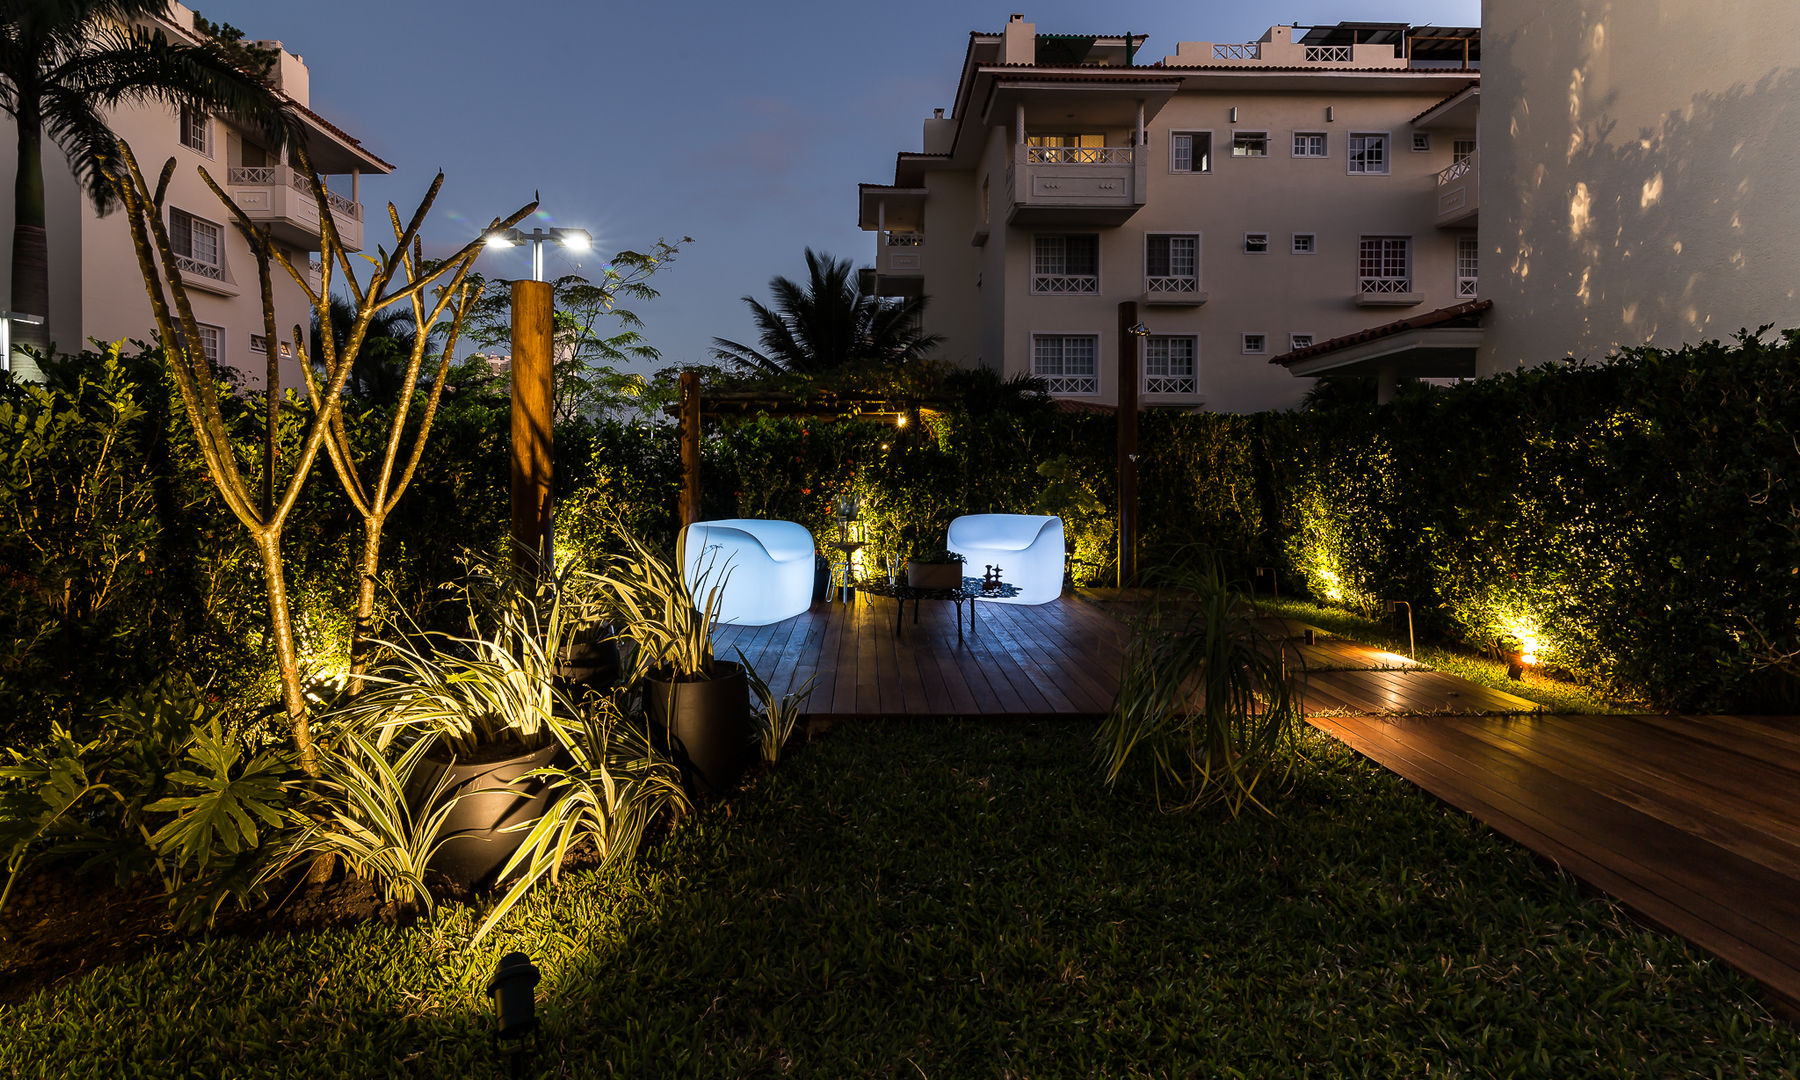 Área externa - Condomínio Jardim Mediterrâneo, branco arquitetura branco arquitetura Giardino tropicale